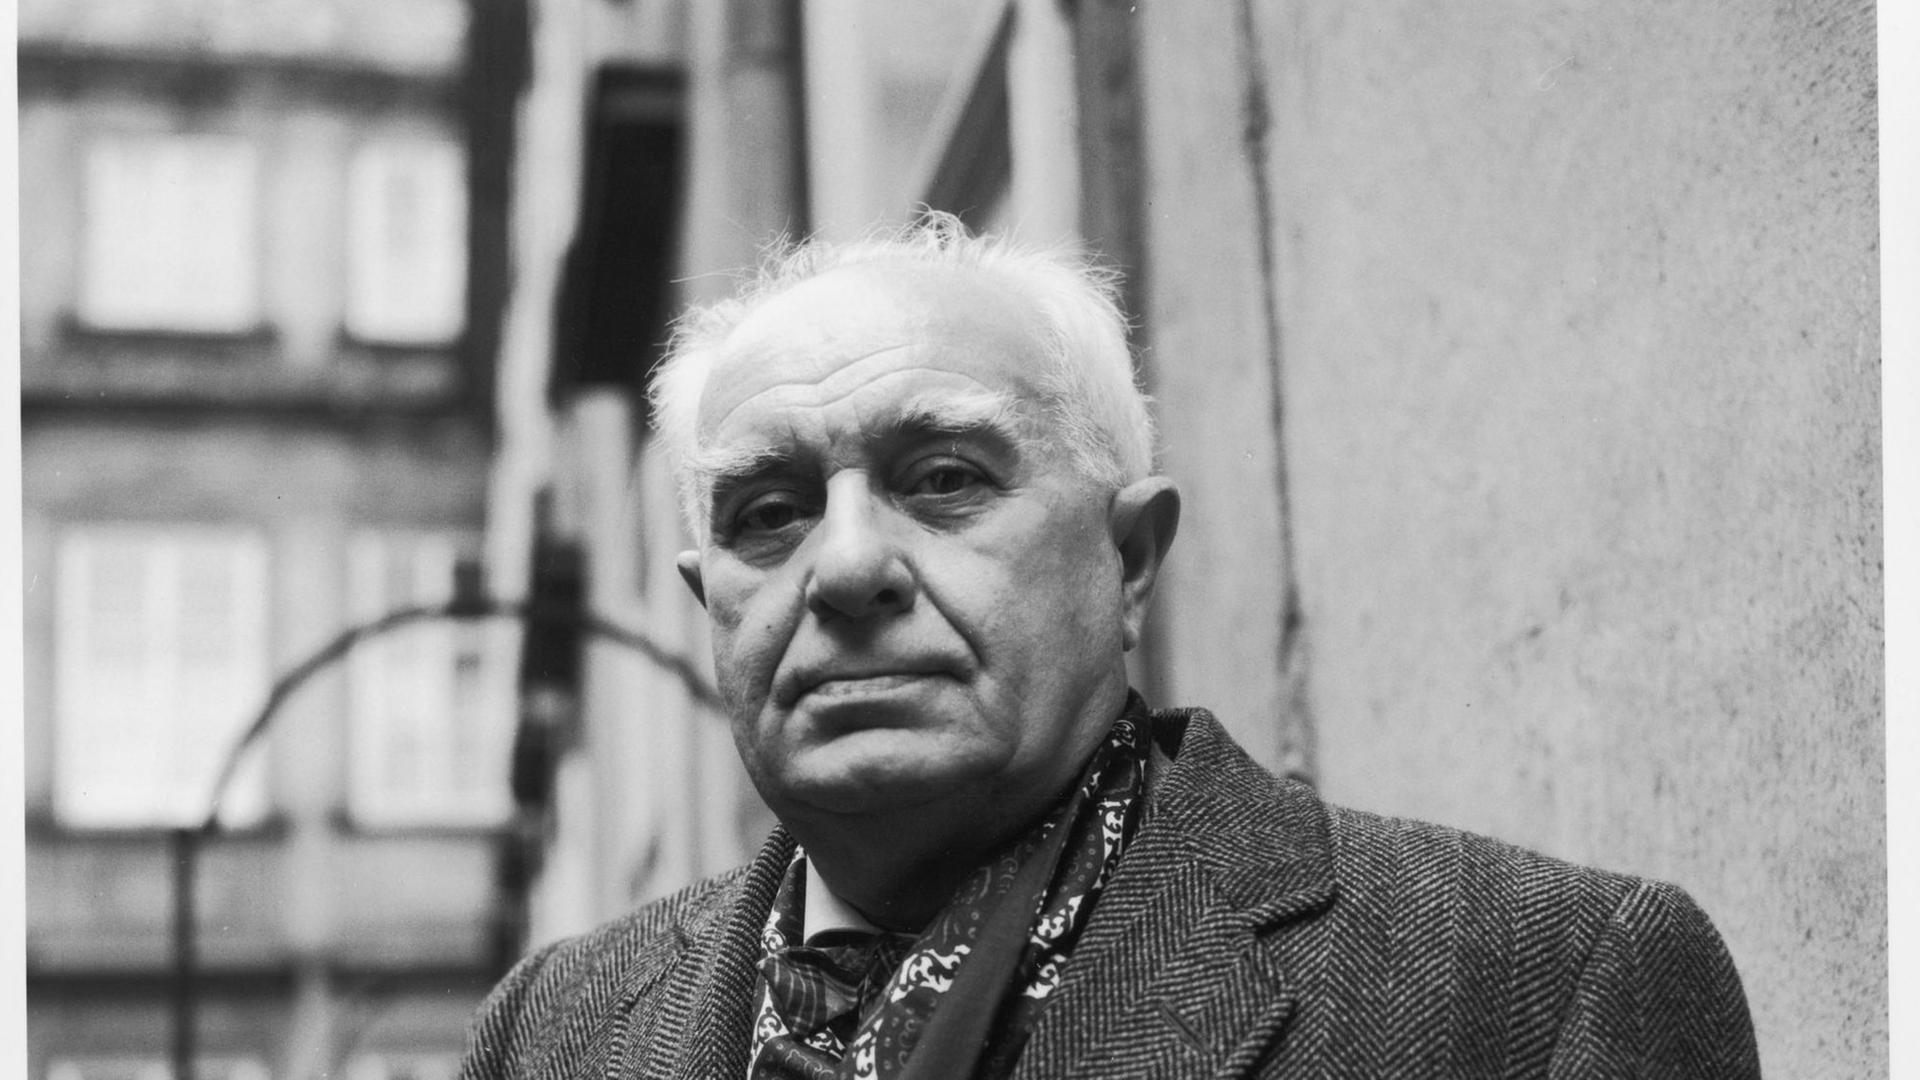 eine Schwarzweiss-Photographie von 1968 zeigt Johannes Urzidil, tschechischer Schriftsteller, in schwarzem Wollmantel in der Prager Altstadt. Johannes Urzidil, tschechischer Schriftsteller. Photographie. 1968 |